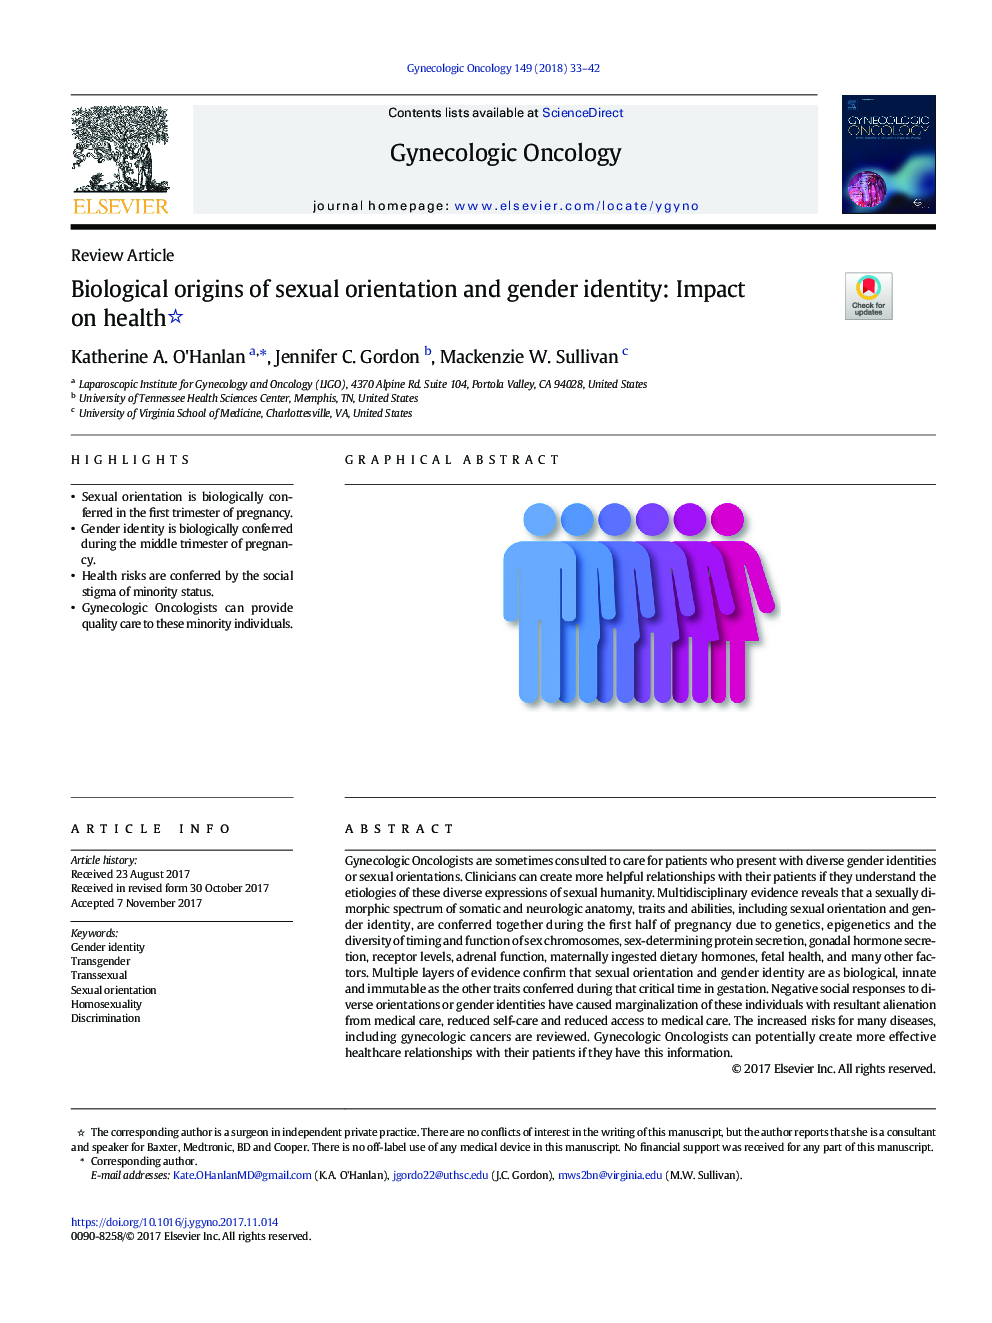 ریشه های بیولوژیکی گرایش جنسی و هویت جنسیتی: تاثیر بر سلامتی 